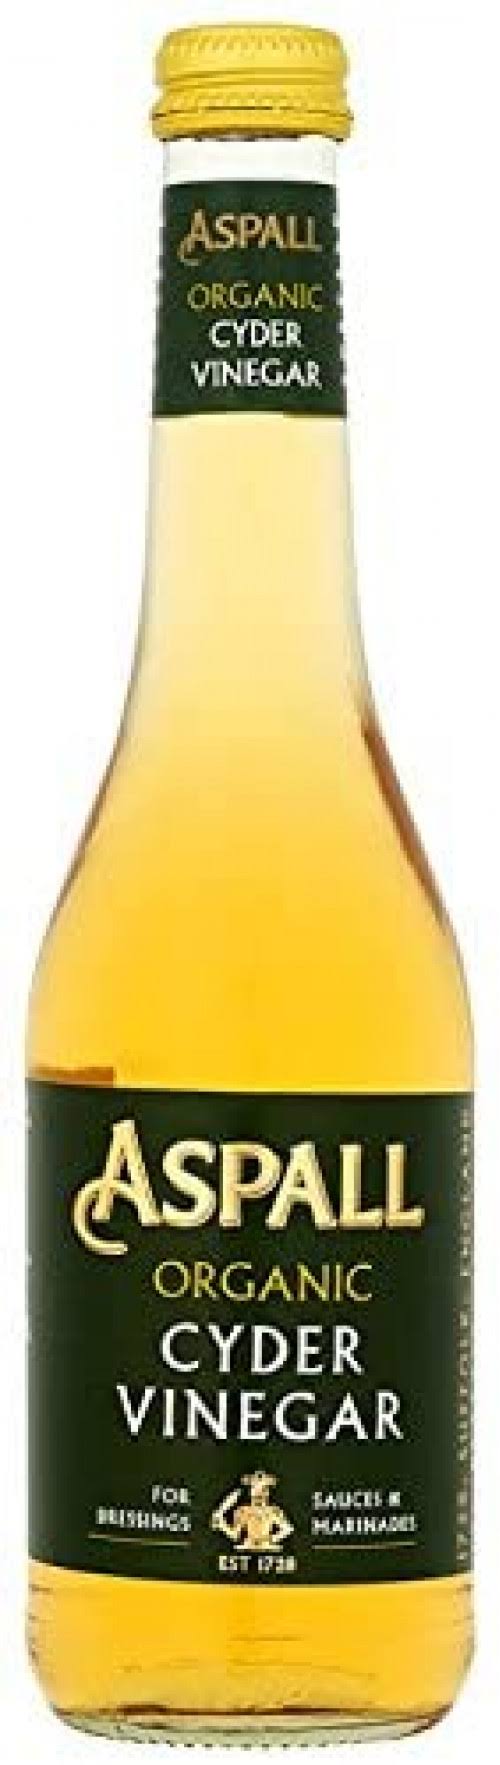 Aspall Cyder Vinegar 350 ml